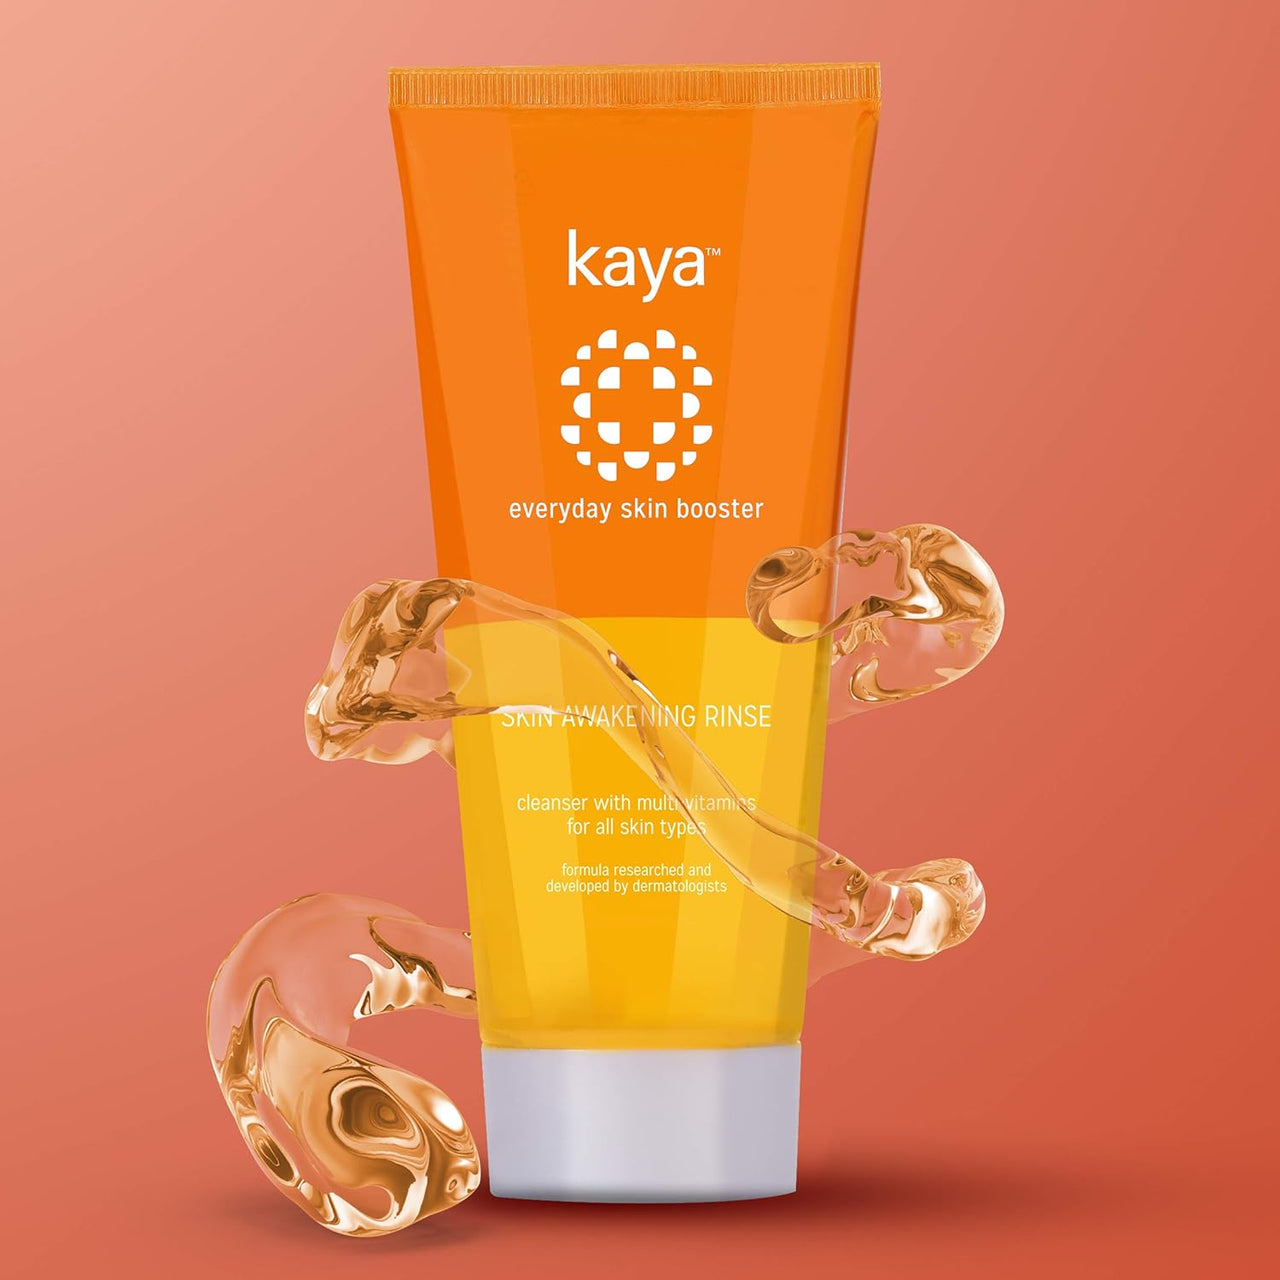 Kaya Skin Awakening Rinse Face Wash with Niacinamide, Vitamin C, A & E for All Skin Types